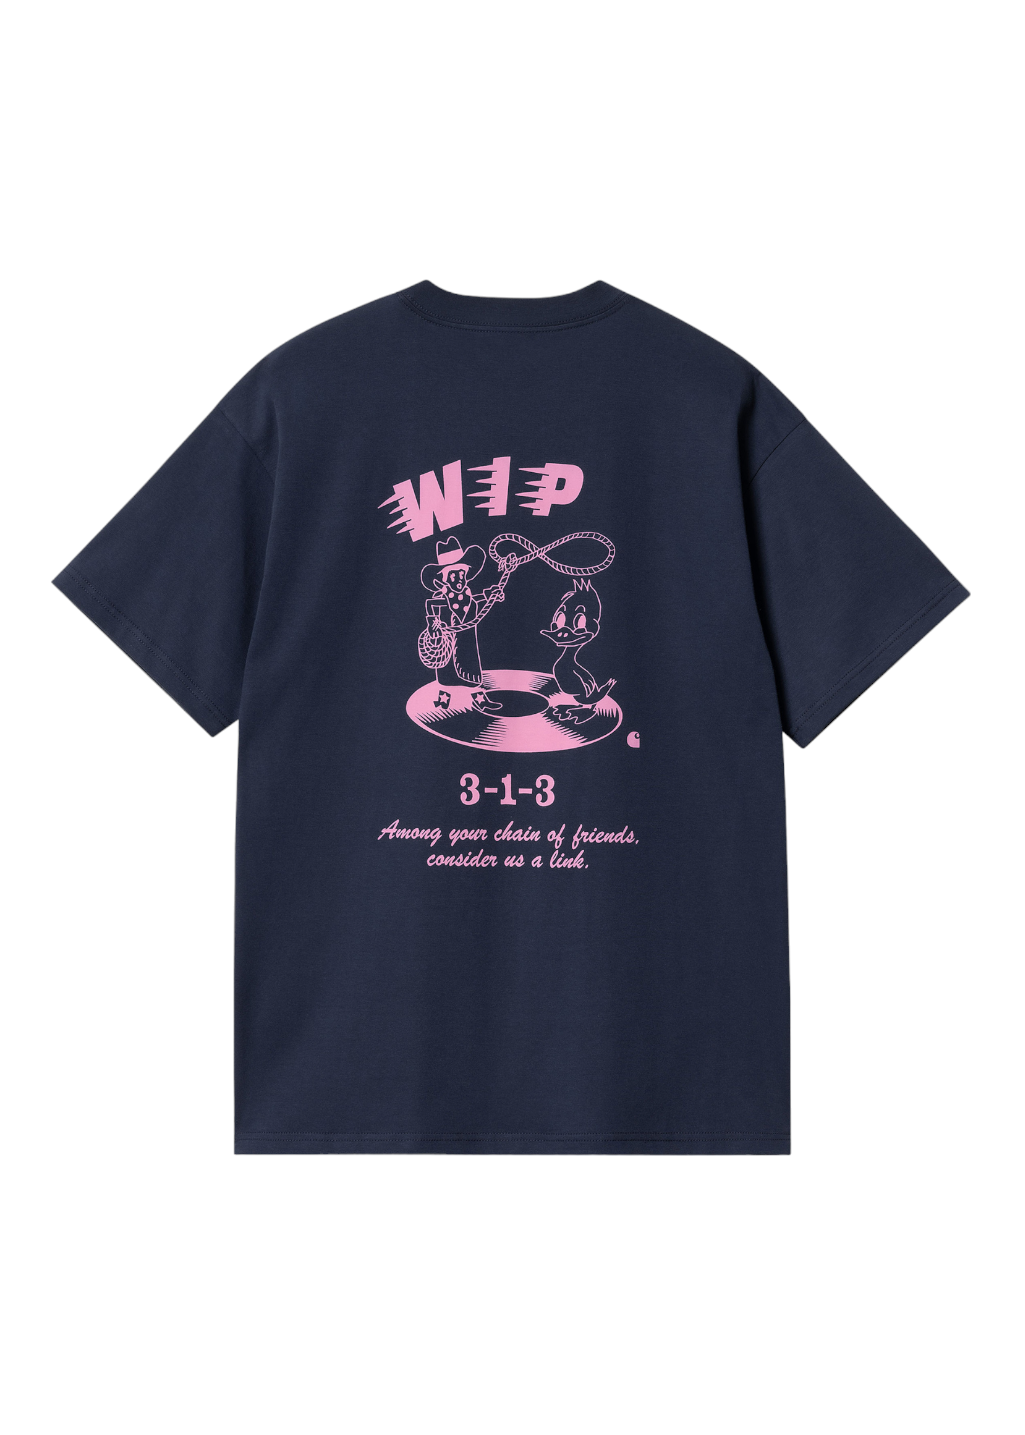 Carhartt WIP - S/S Friendship T-Shirt - Air Force Blue/Light Pink